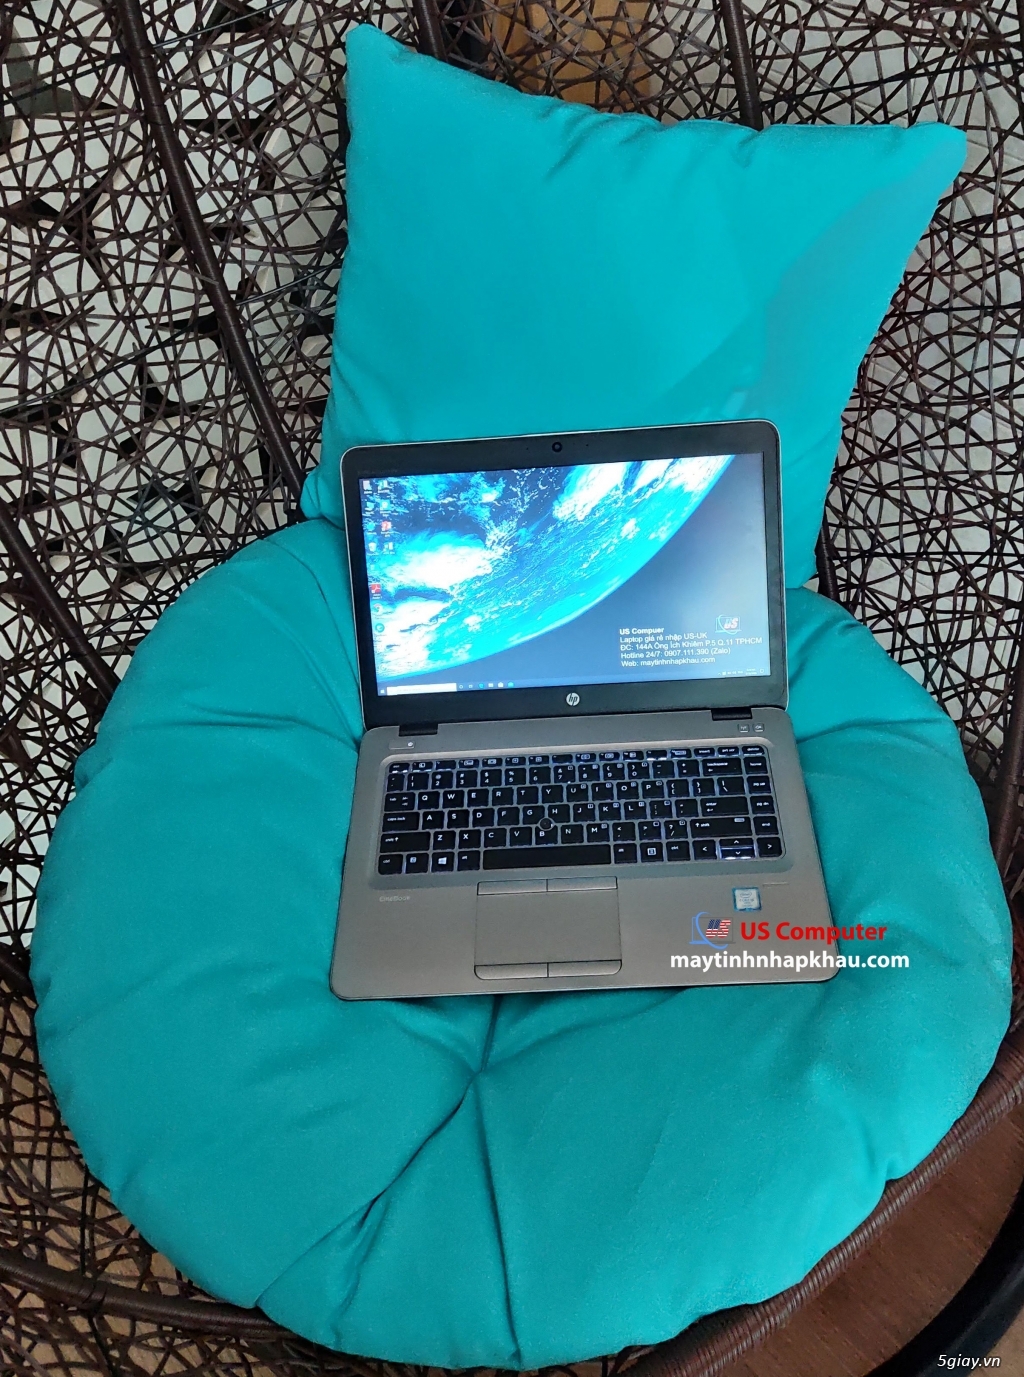 Laptop nhập HP 840 G4 thời trang - 16